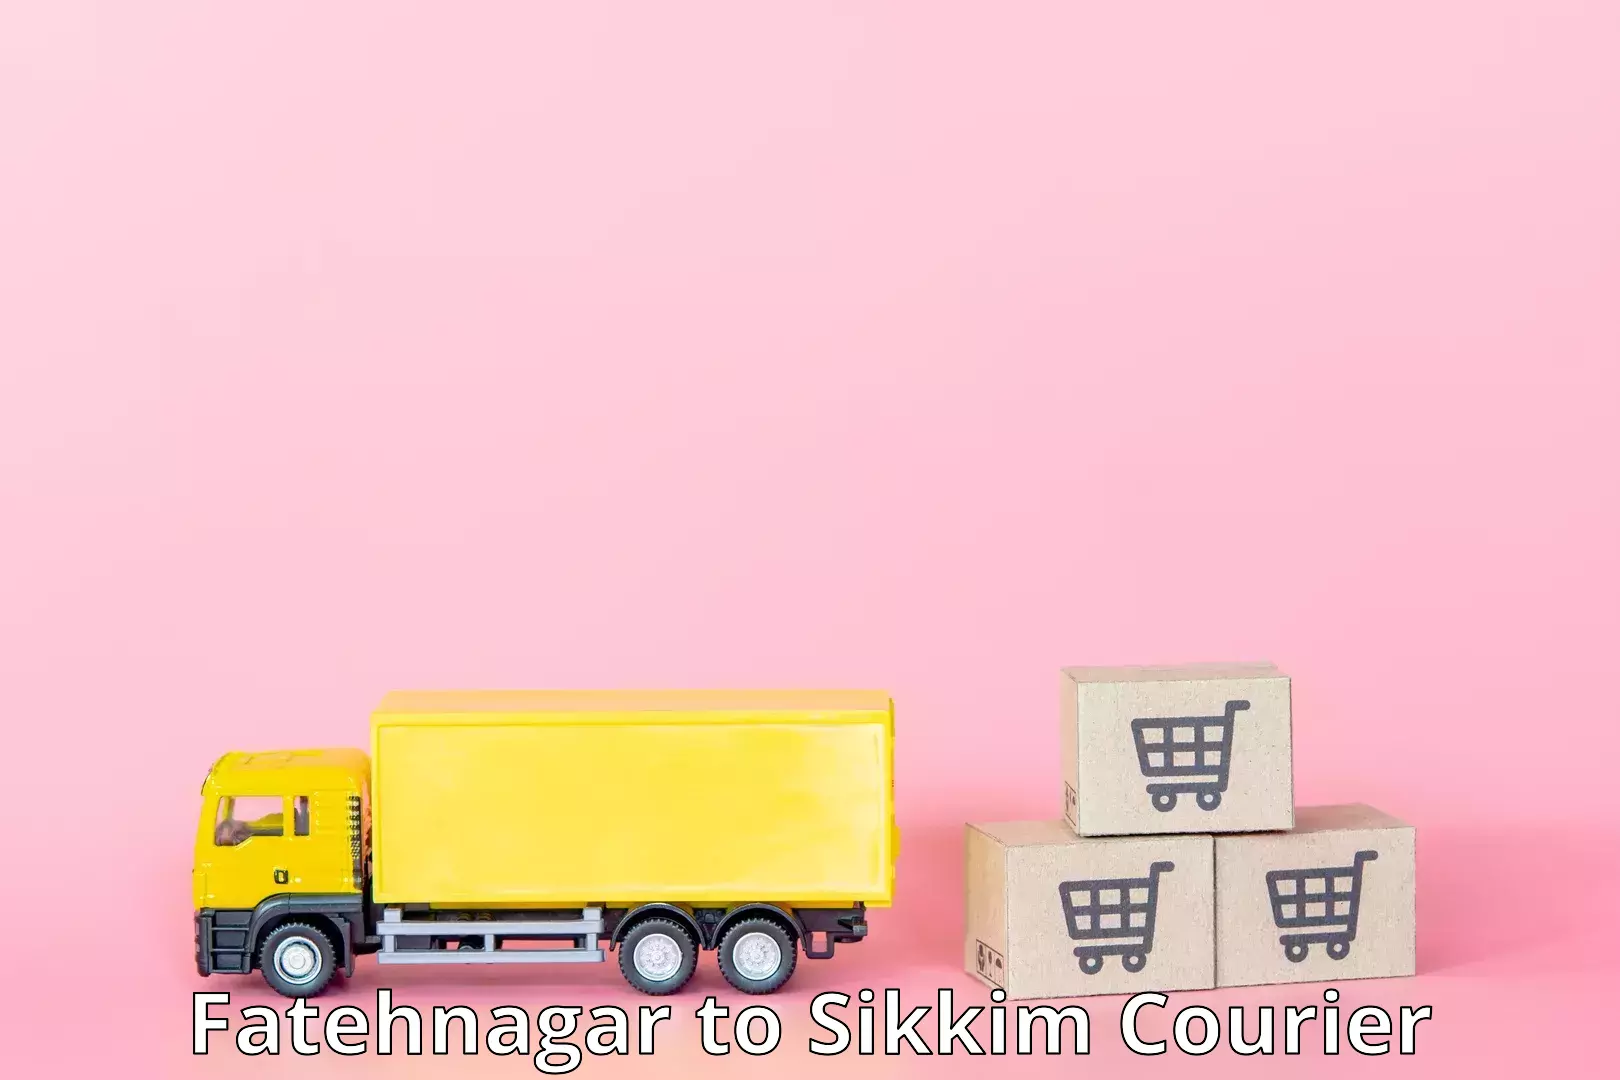 Supply chain efficiency Fatehnagar to Sikkim